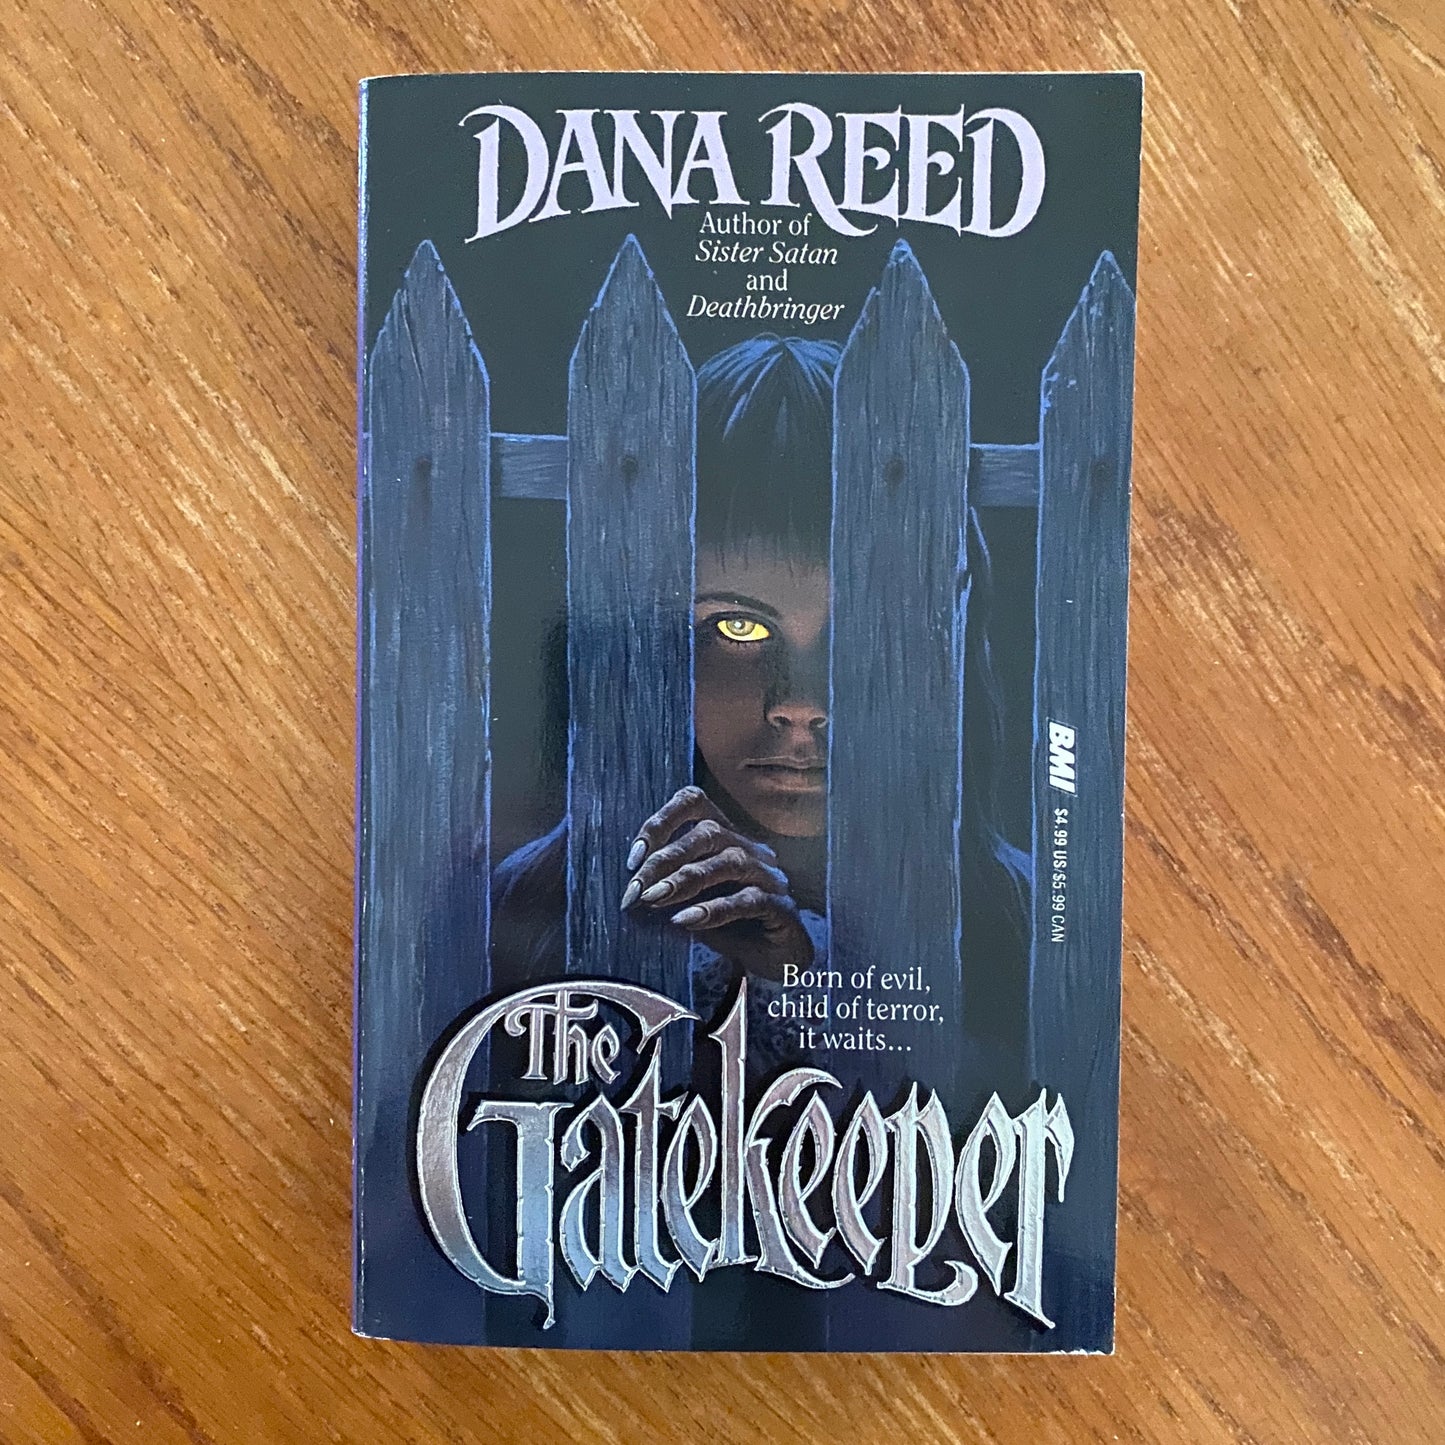 The Gatekeeper - Dana Reed